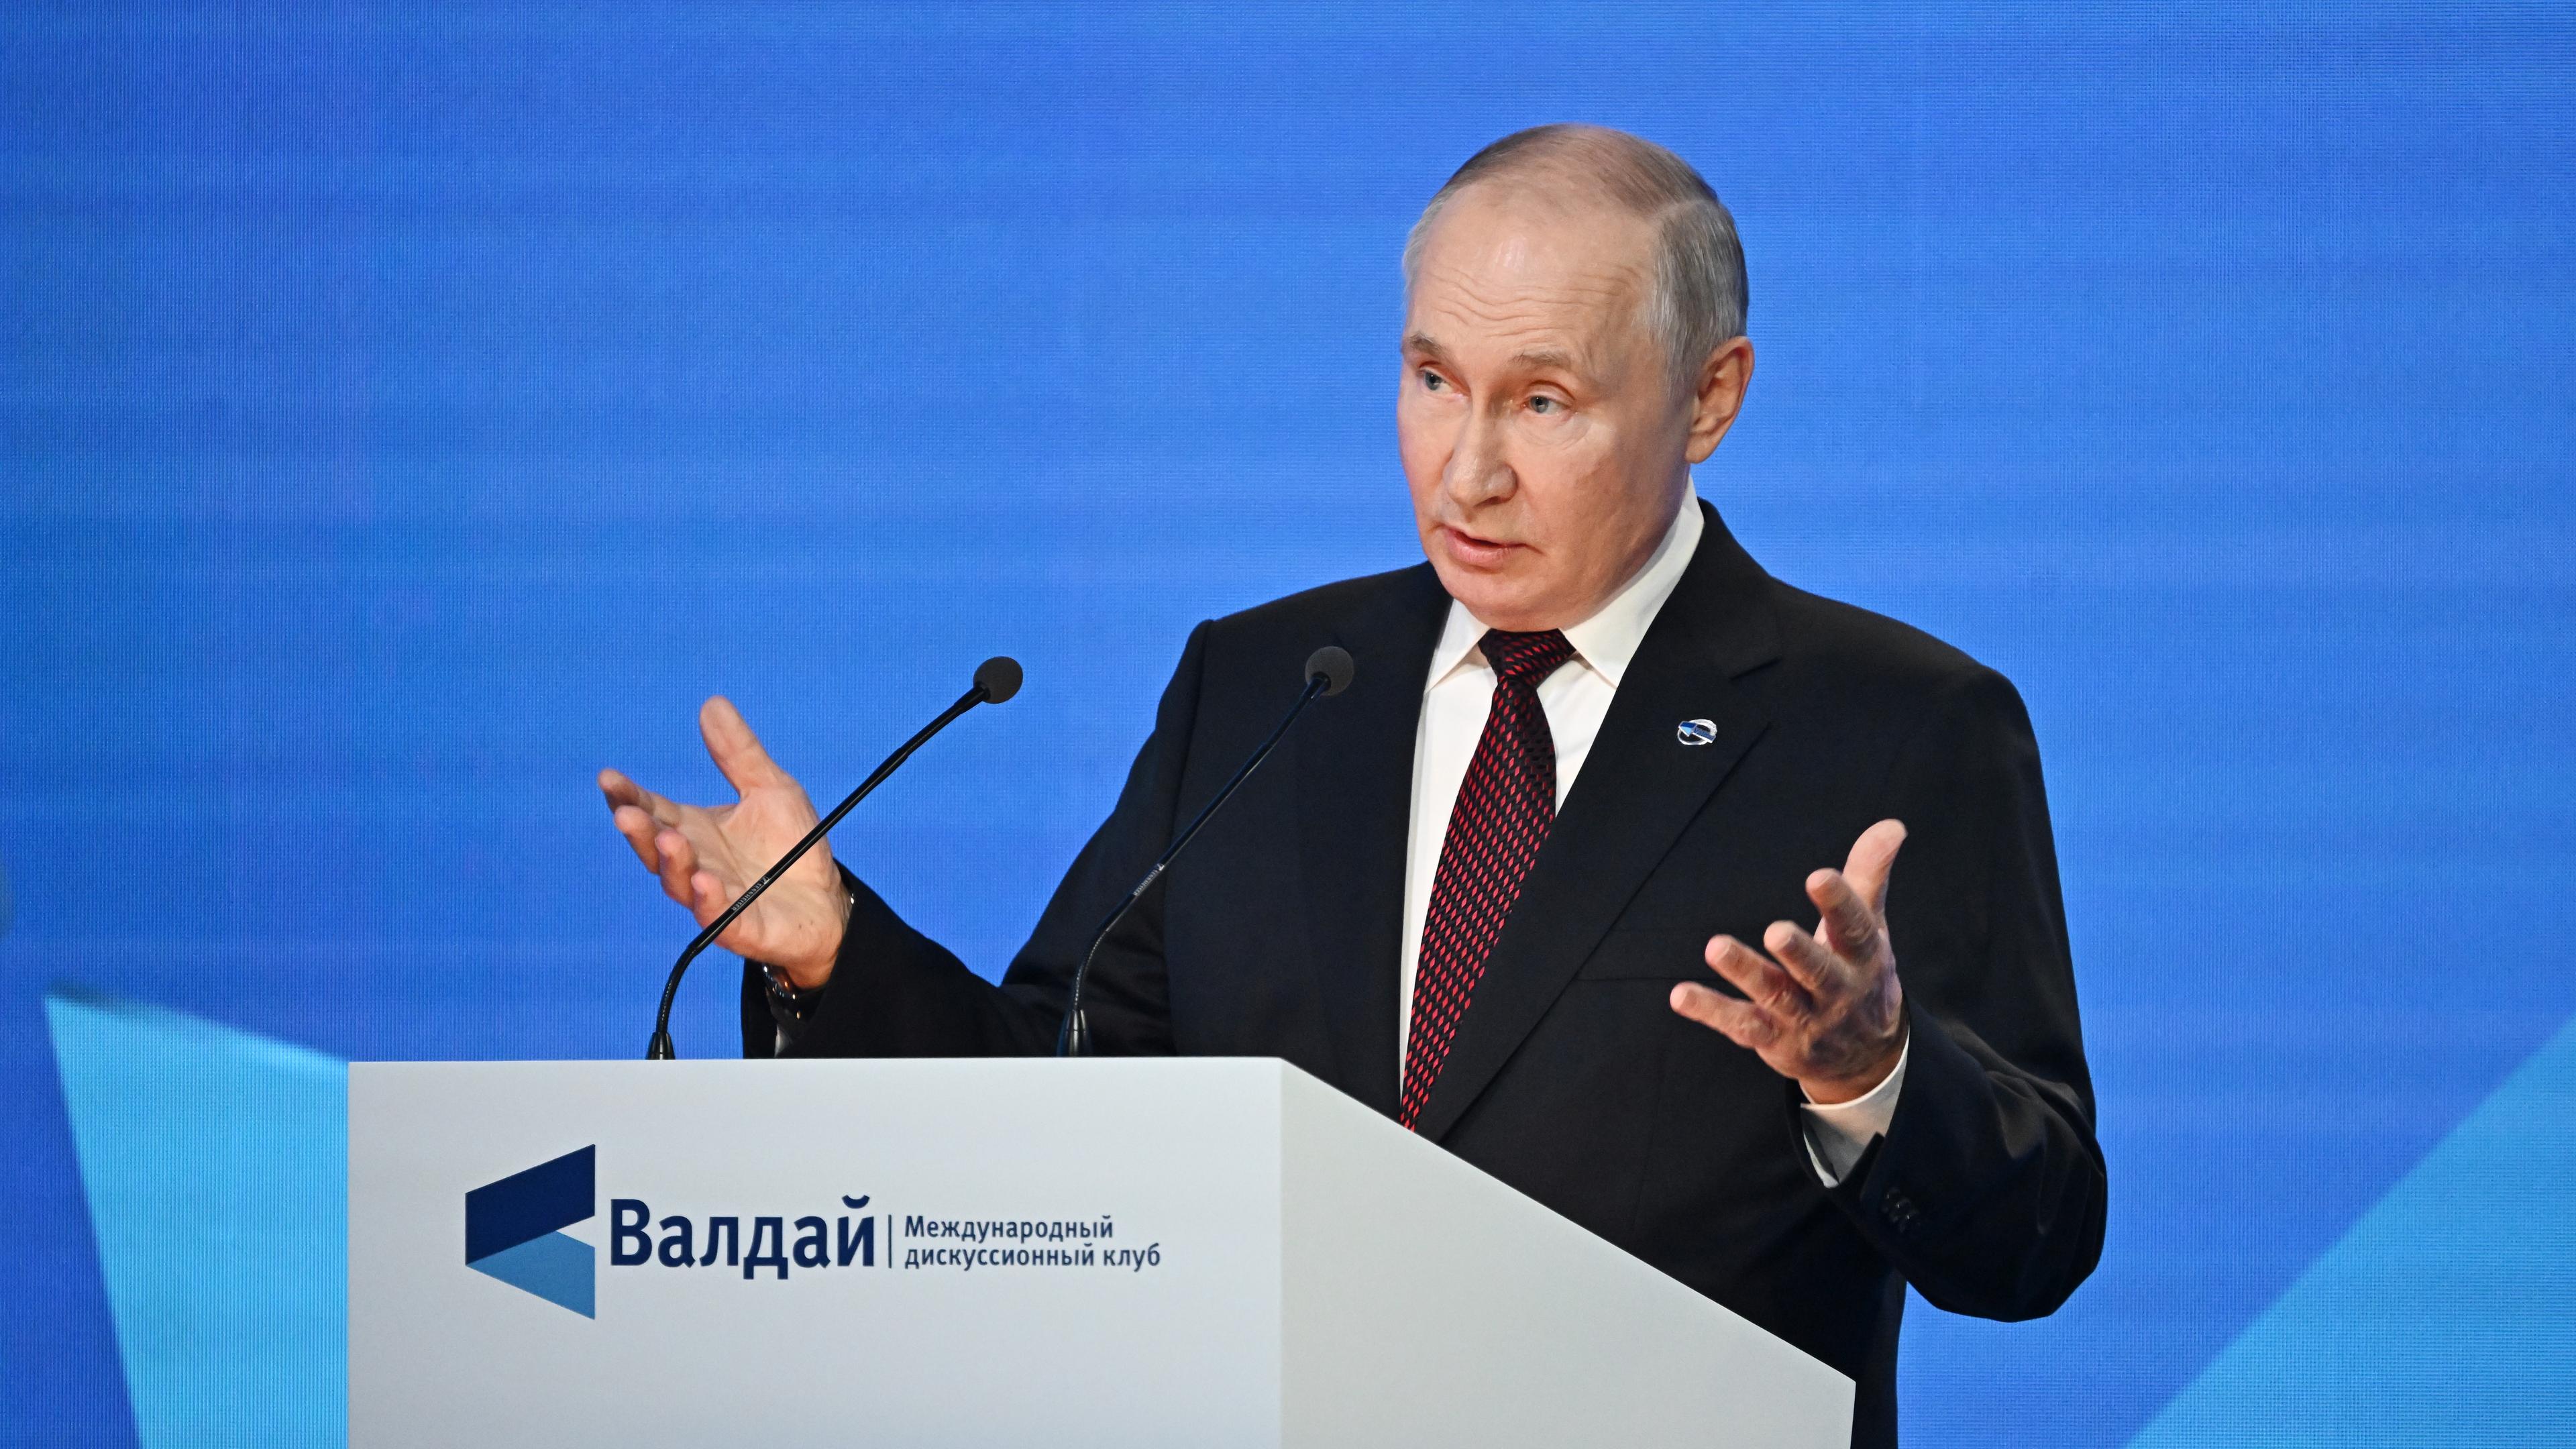 Russland, Sotschi: Auf dem Bild spricht Wladimir Putin, Präsident von Russland, auf der Jahrestagung des Waldai-Diskussionsforums im russischen Schwarzmeerort Sotschi.